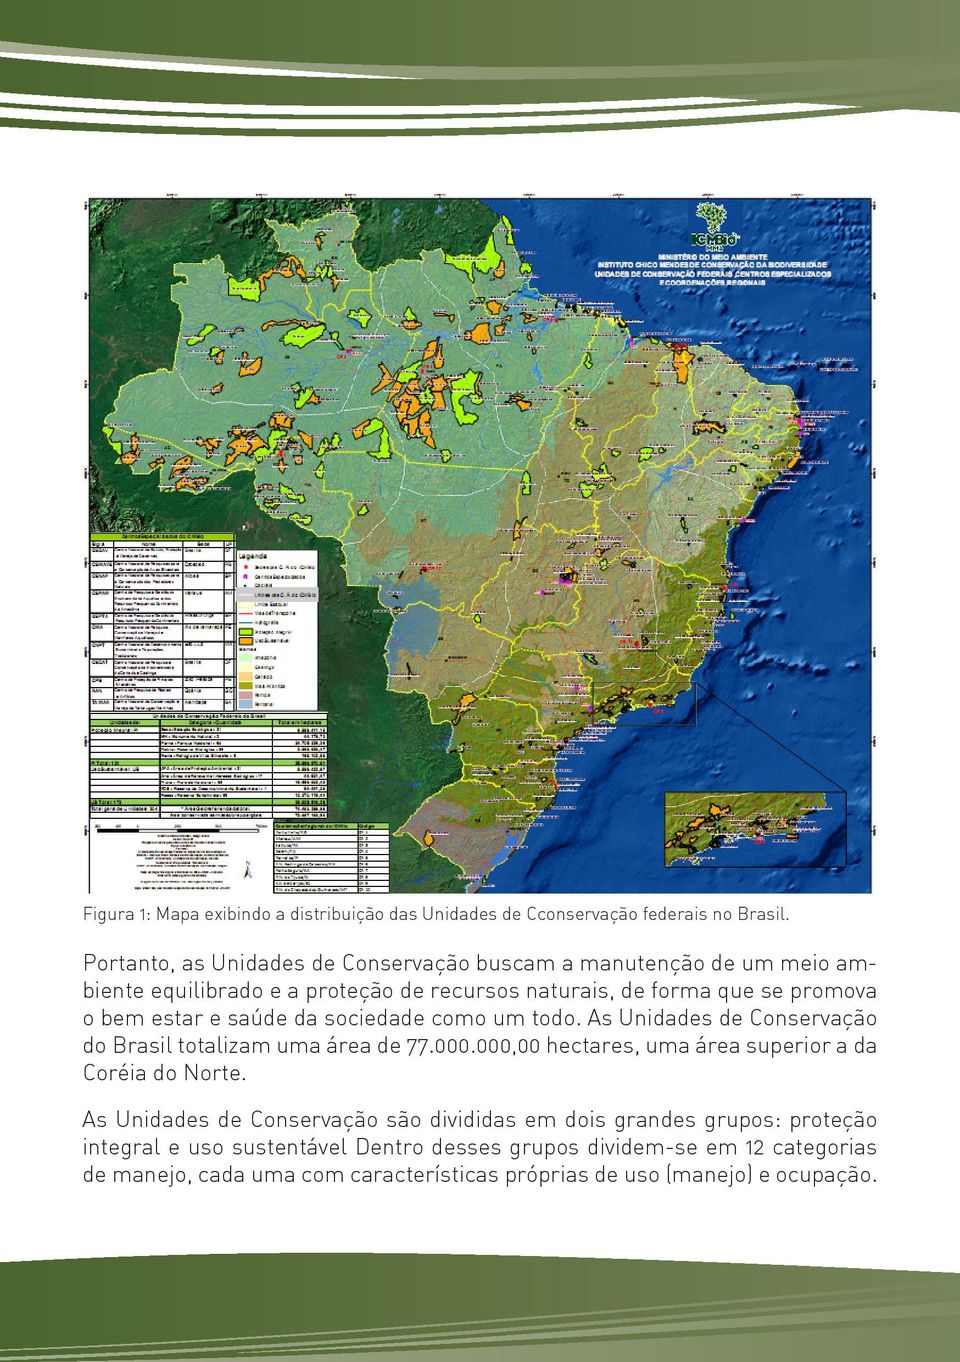 sociedade como um todo. As Unidades de Conservação do Brasil totalizam uma área de 77.000.000,00 hectares, uma área superior a da Coréia do Norte.